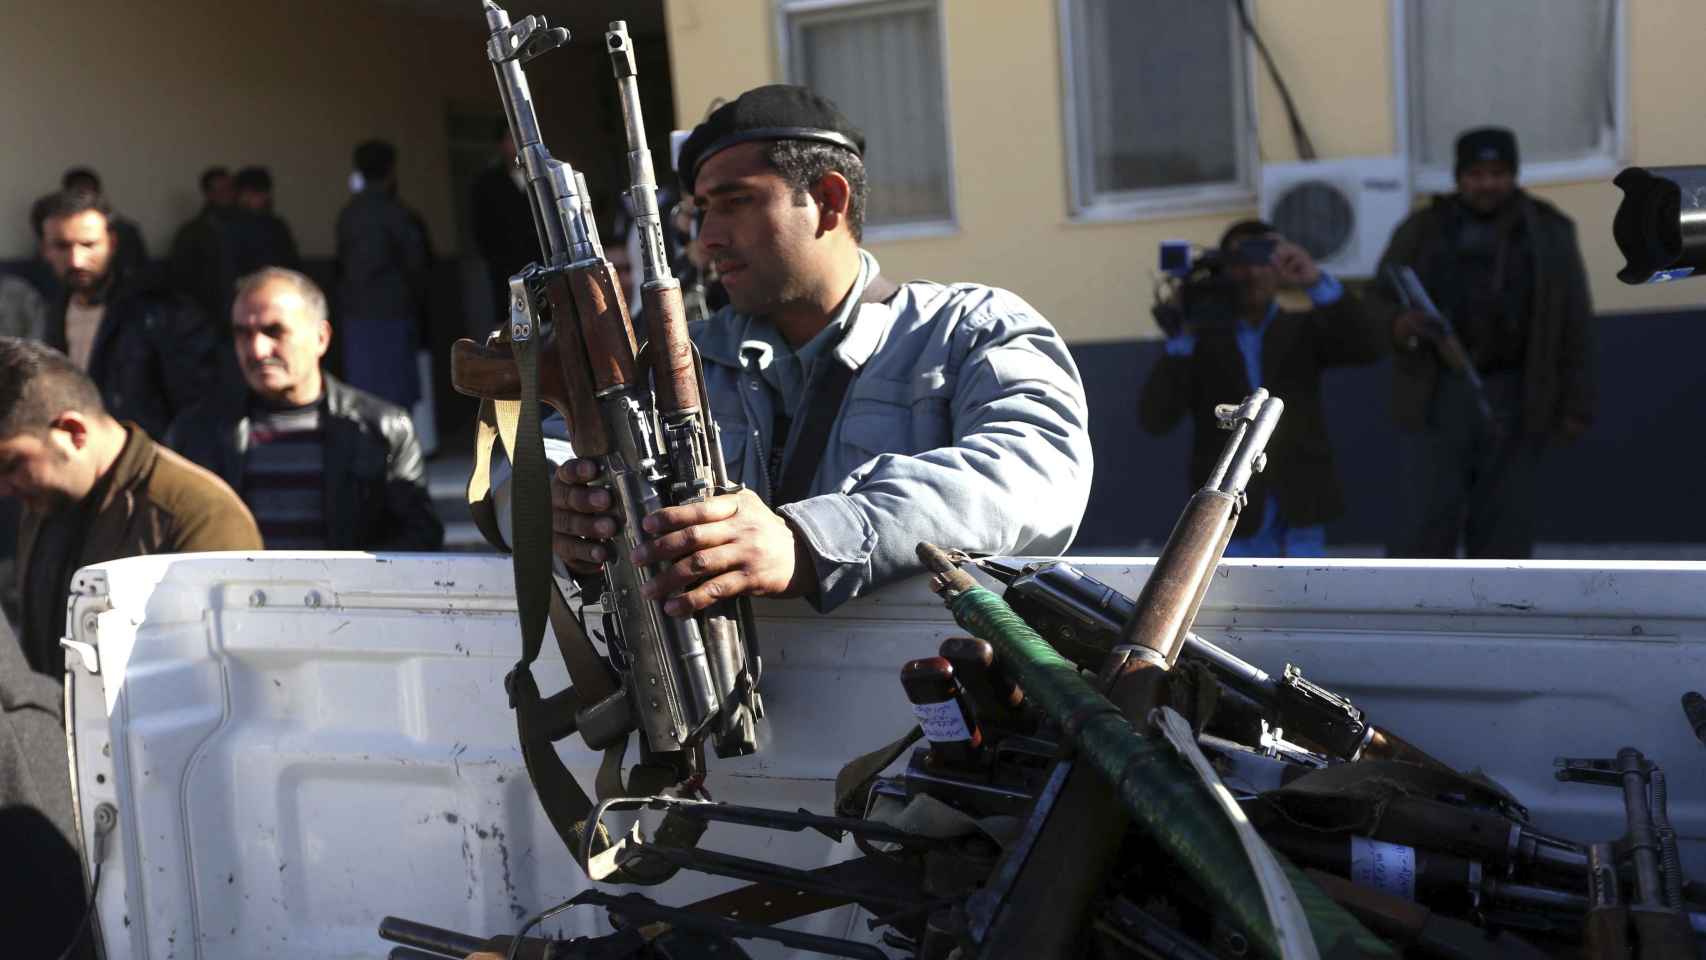 La policía amontona armas en Afganistán.